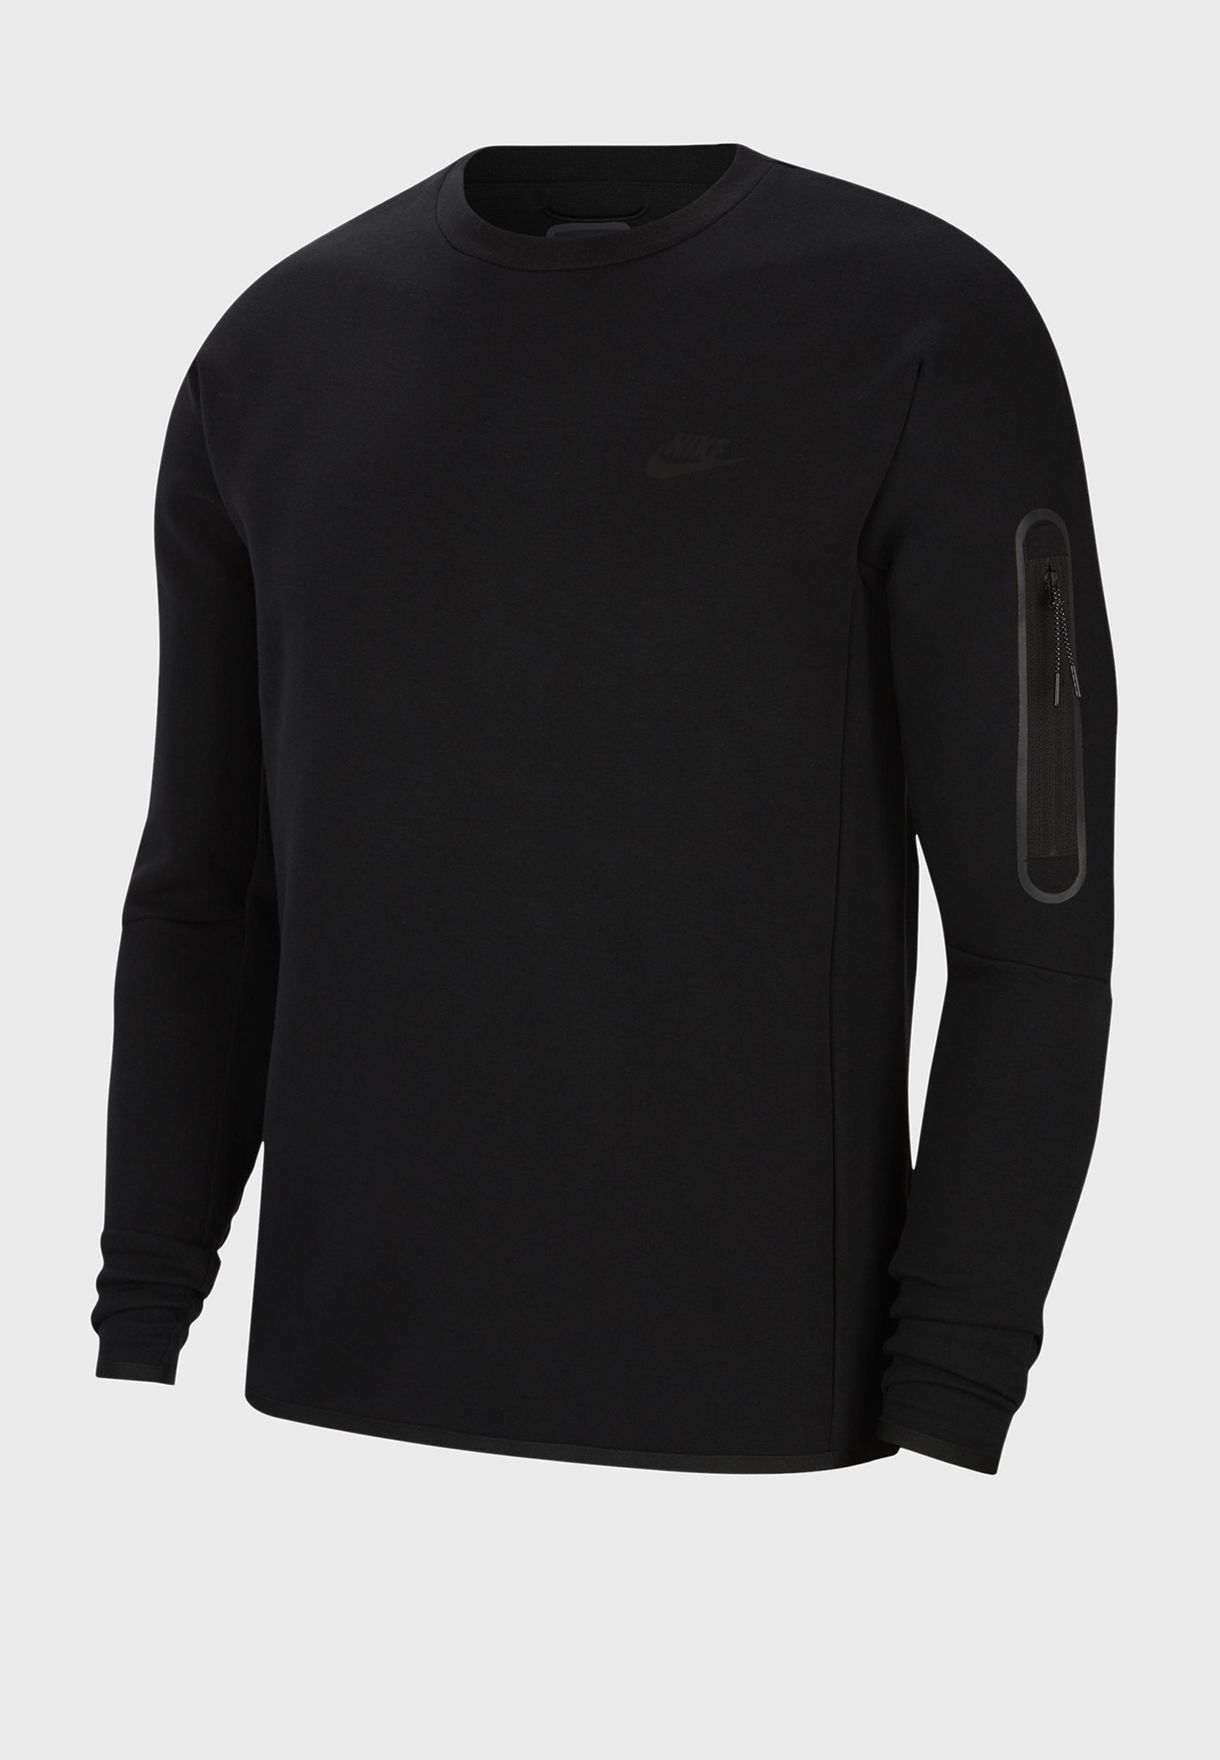 NSW Tech Fleece Sweatshirt